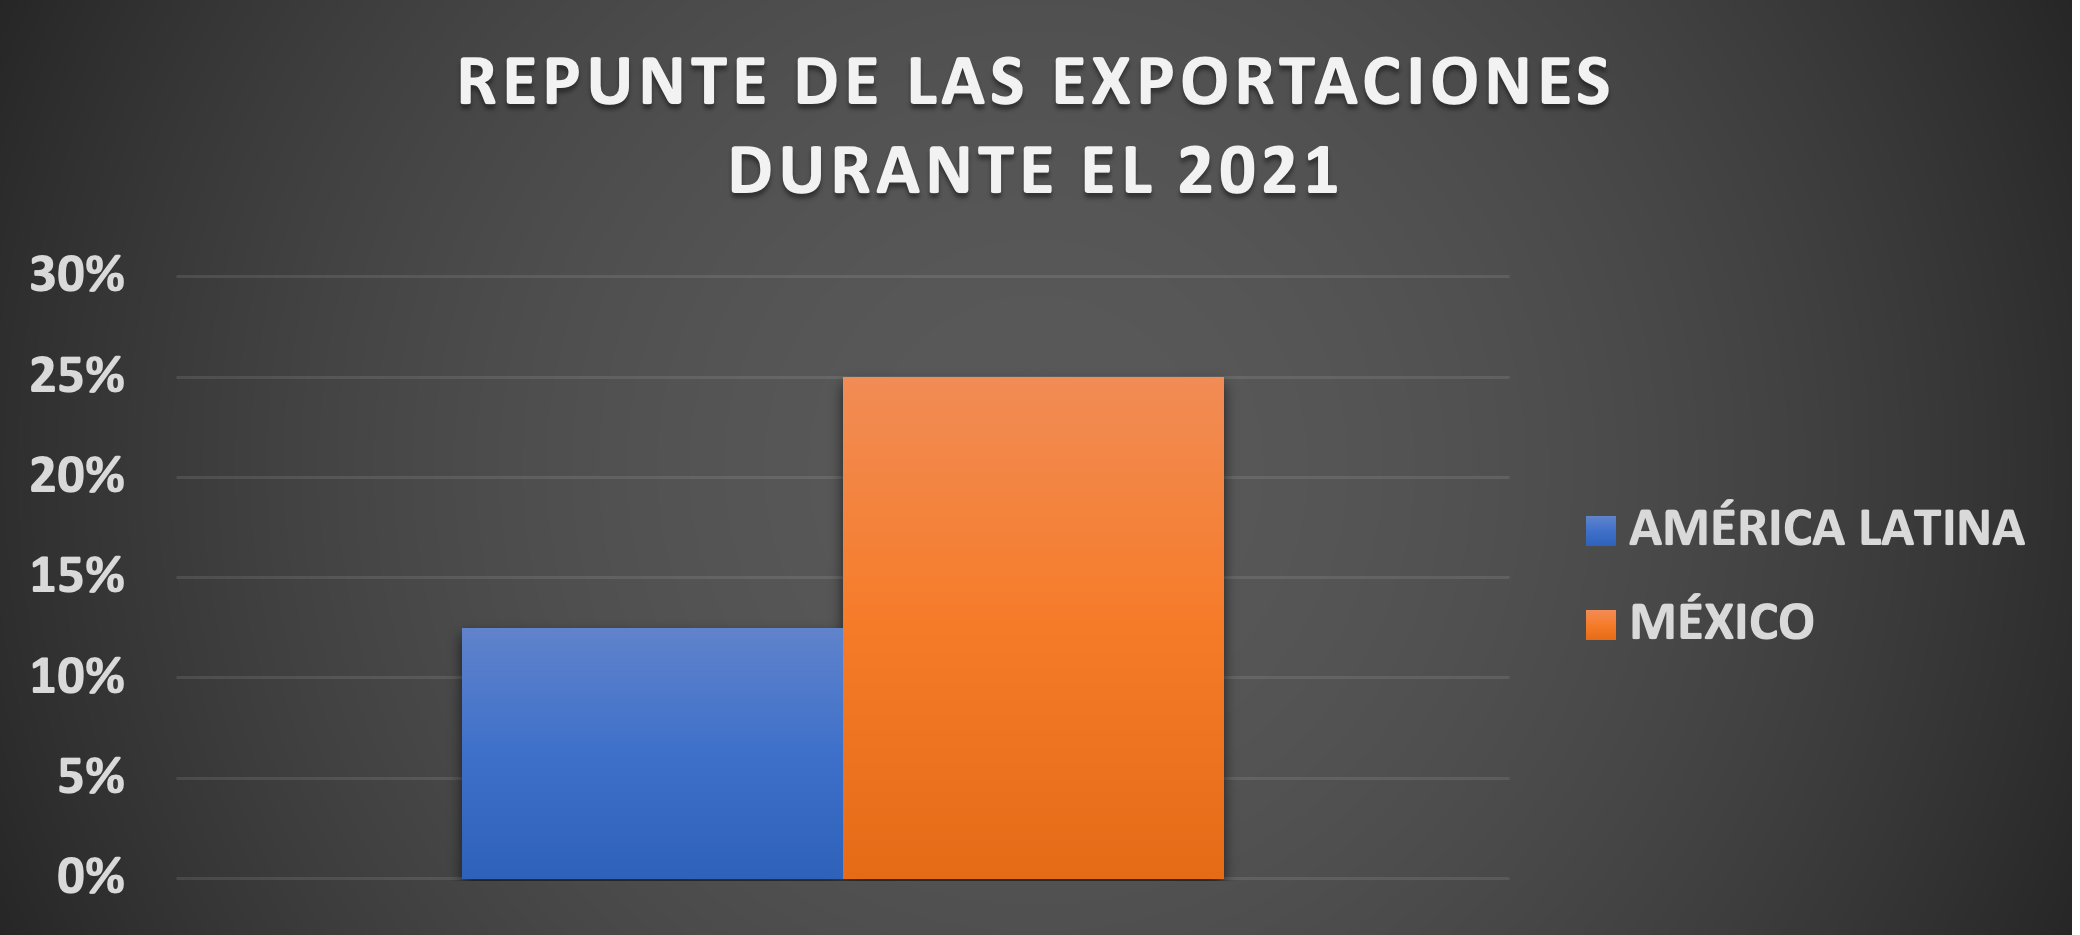 Gráfica 4. Repunte de las exportaciones durante
el 2021